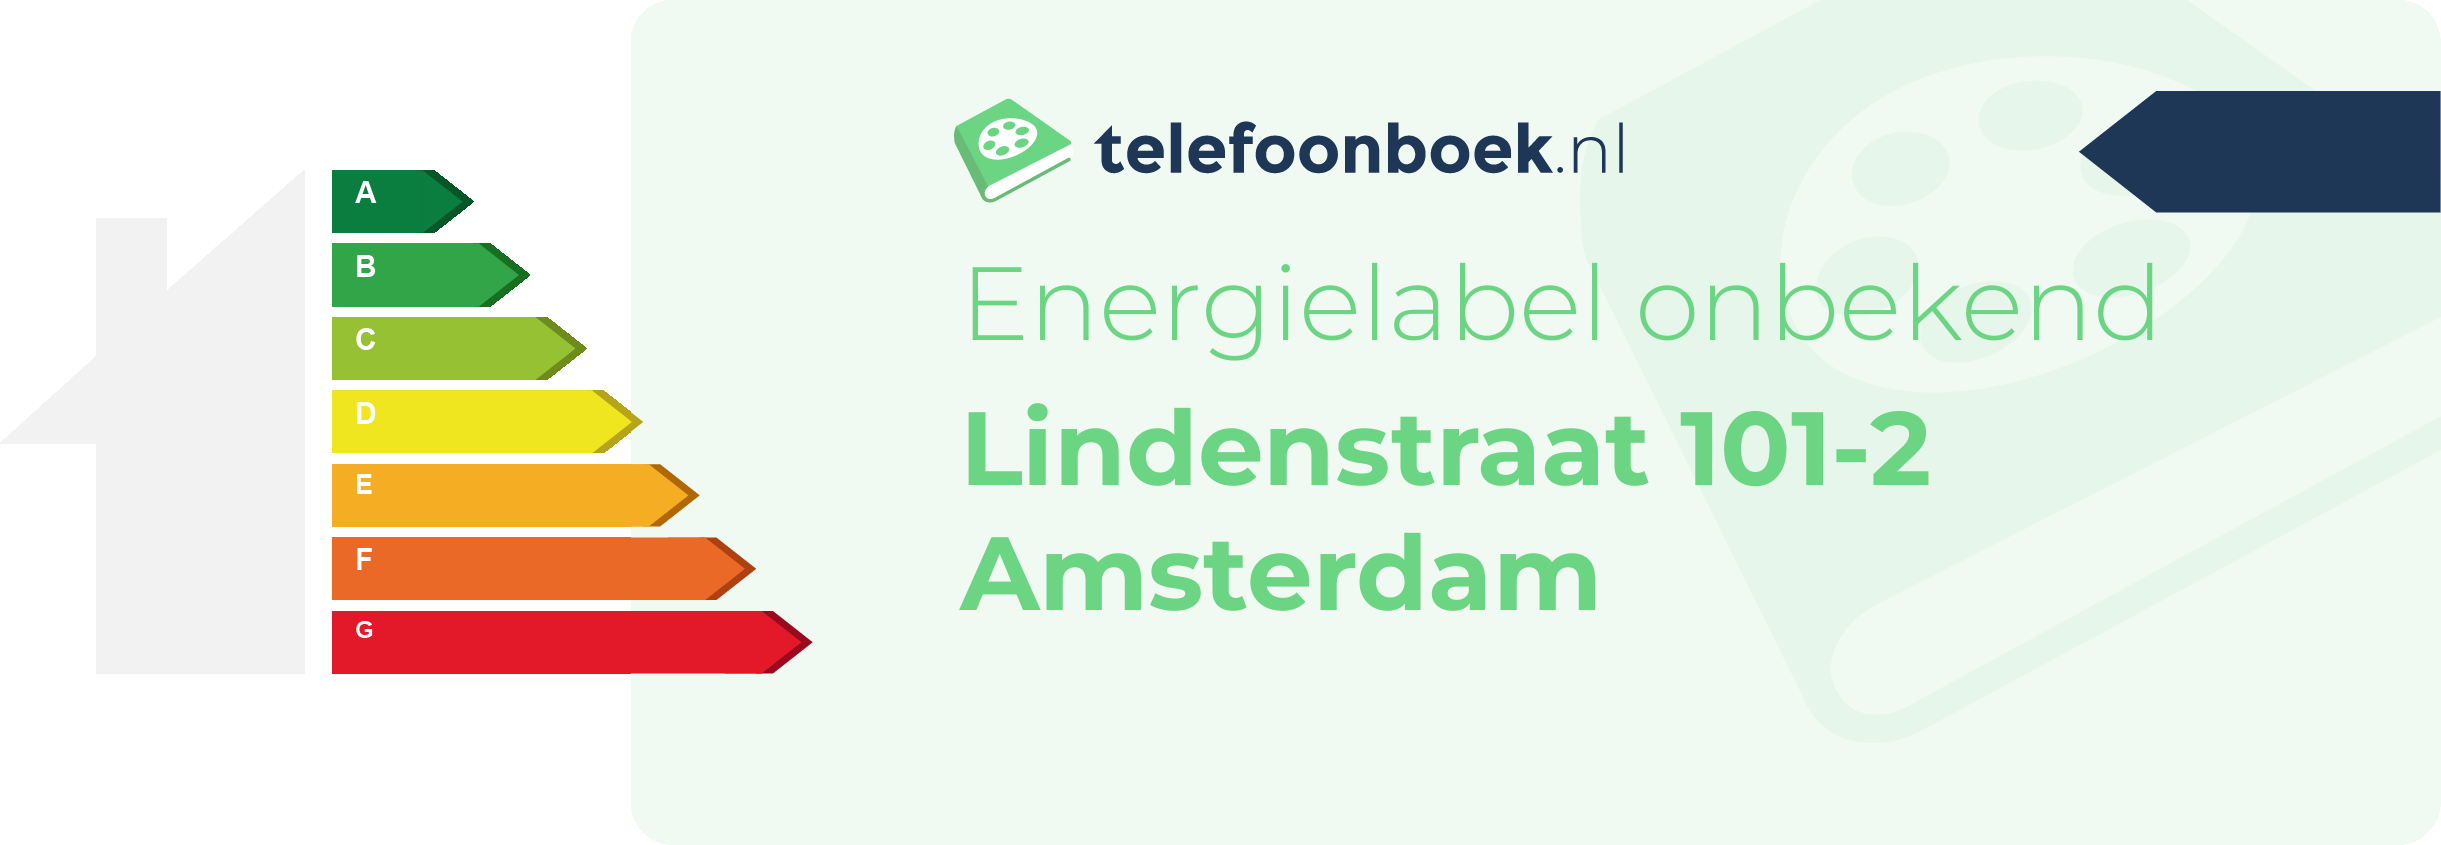 Energielabel Lindenstraat 101-2 Amsterdam